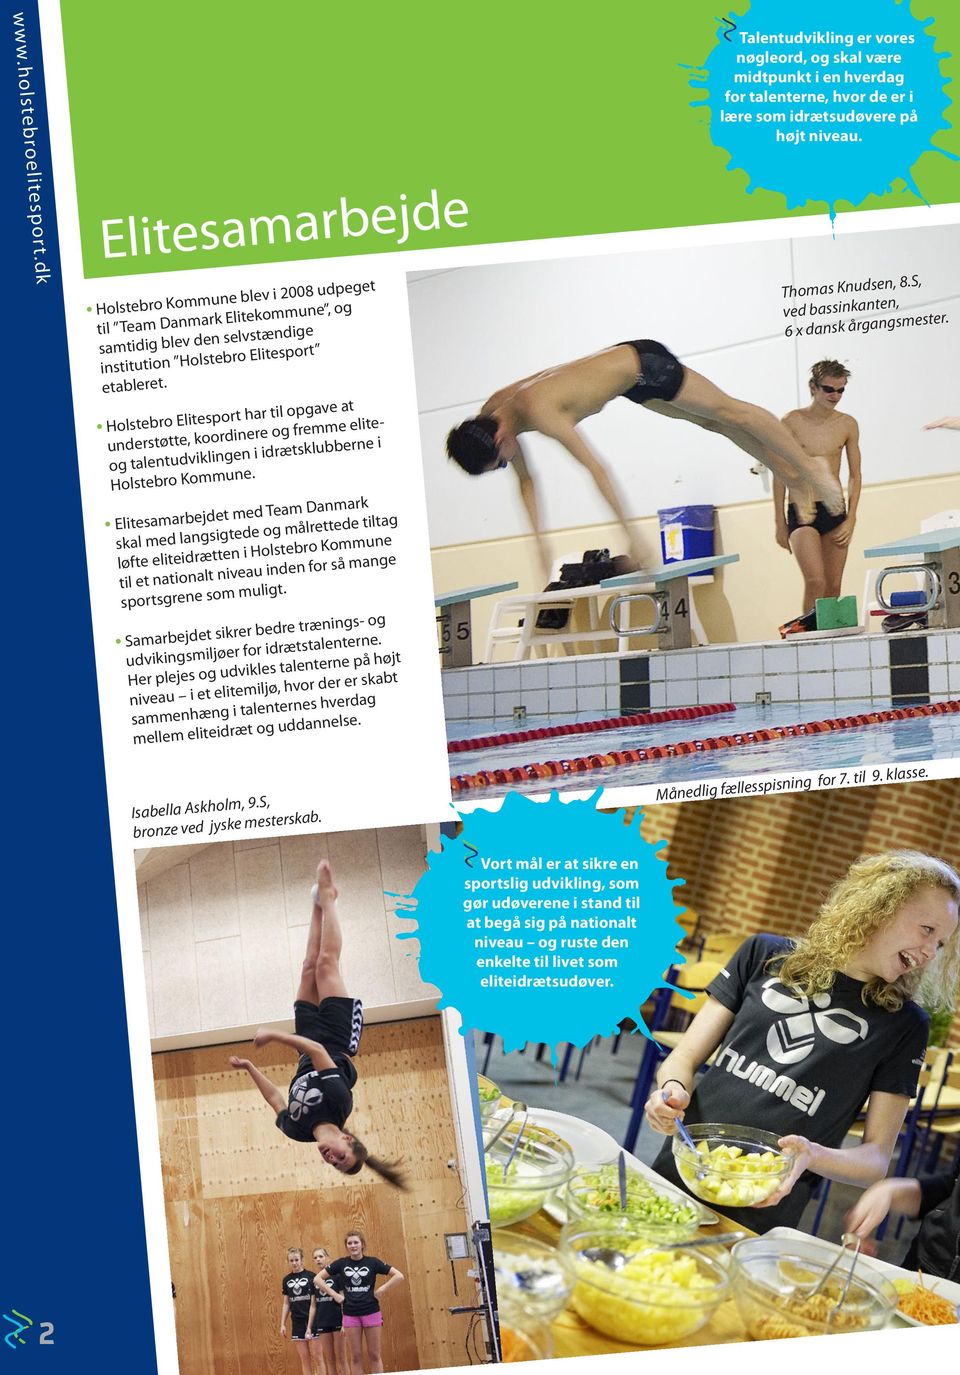 Holstebro Elitesport har til opgave at understøtte, koordinere og fremme eliteog talent udviklingen i idrætsklubberne i Holstebro Kommune.